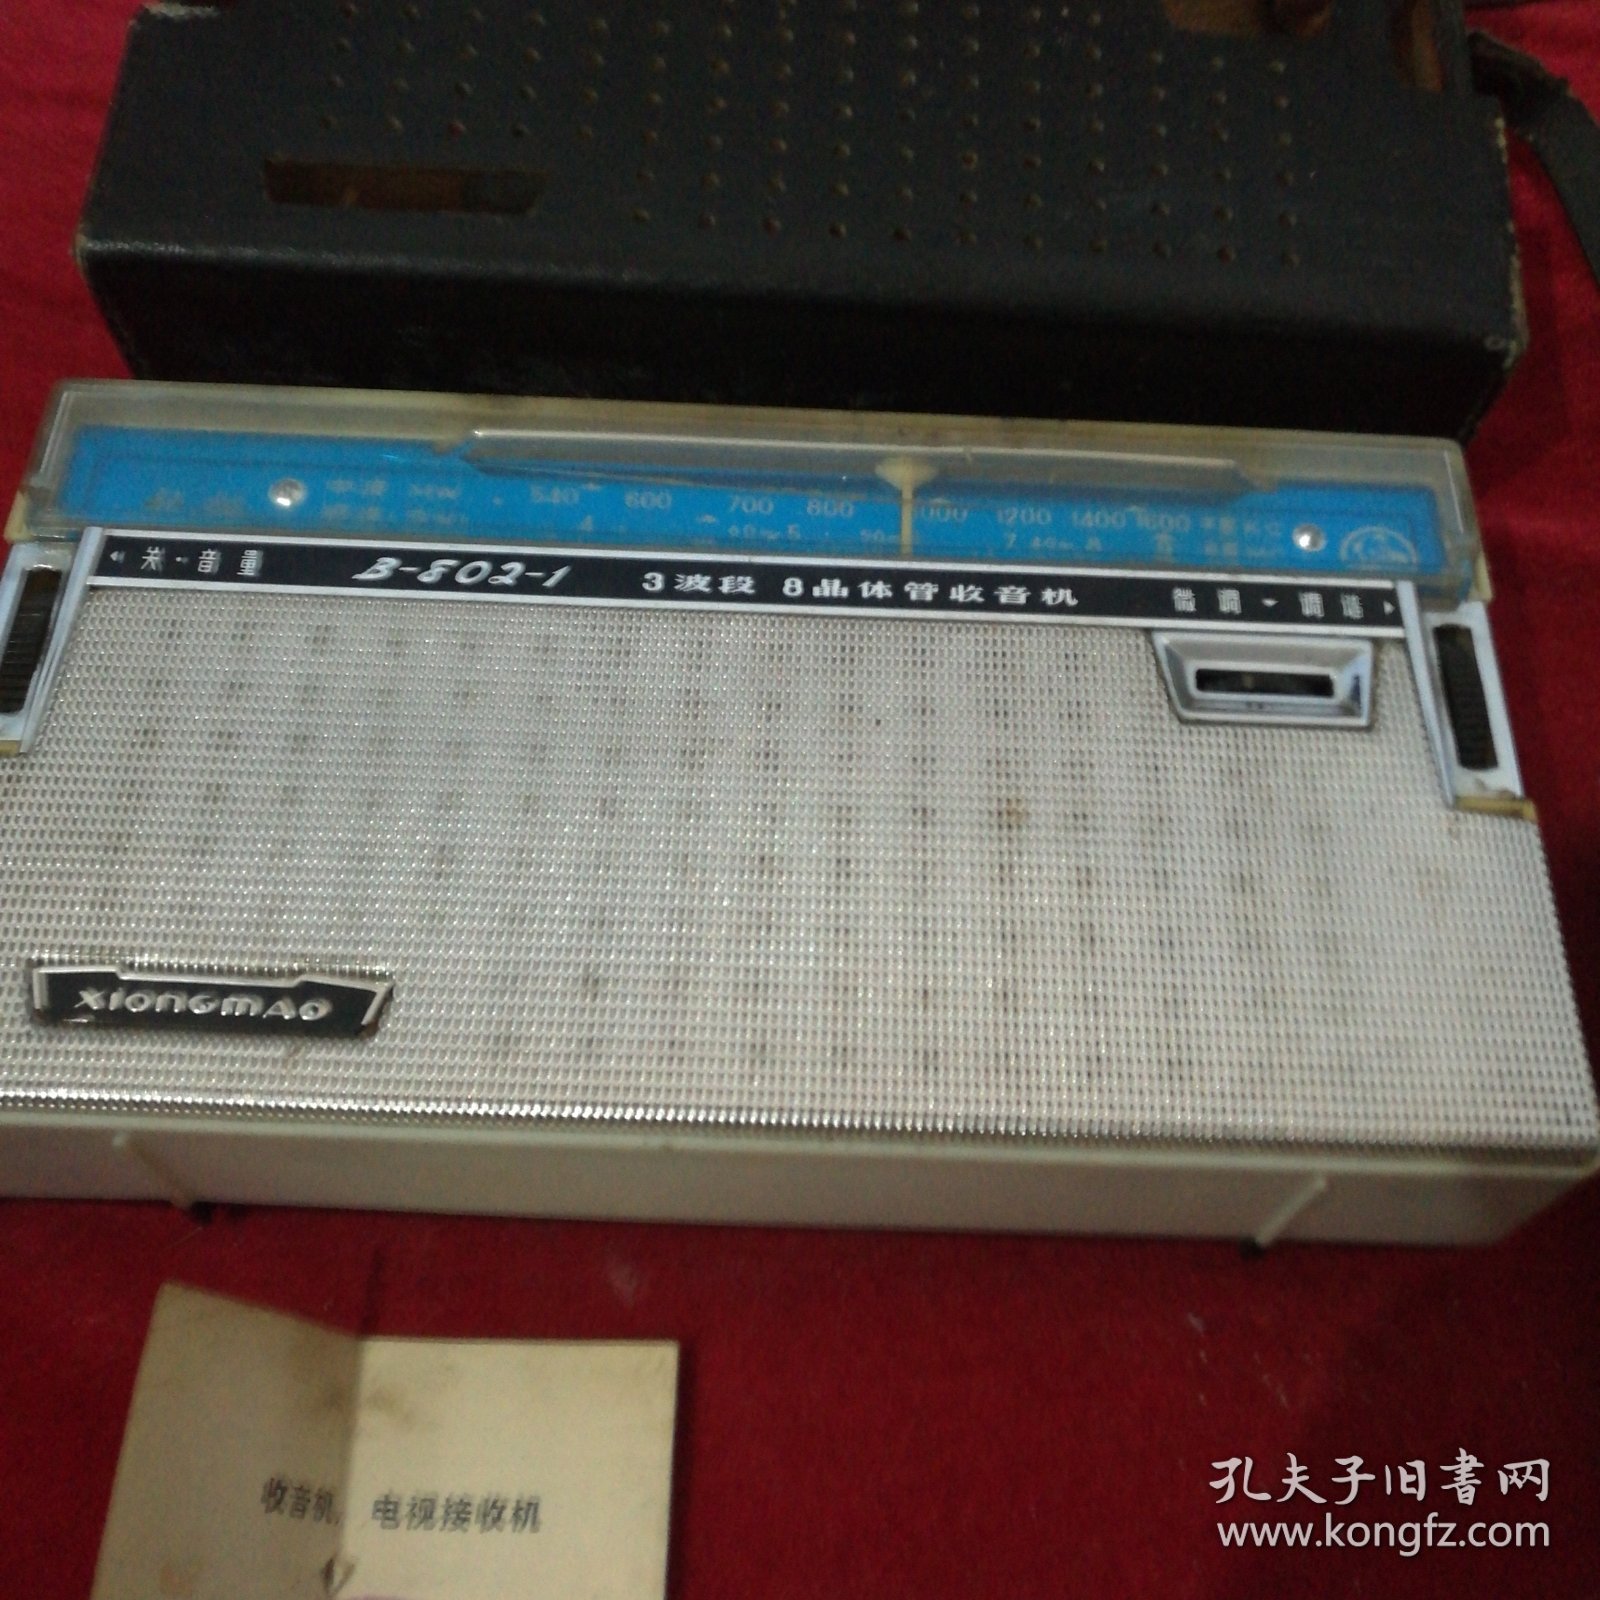 熊猫B一802-1型半导体，能收音，带发票，皮套，说明书，保修换卡，全套，东西如图。